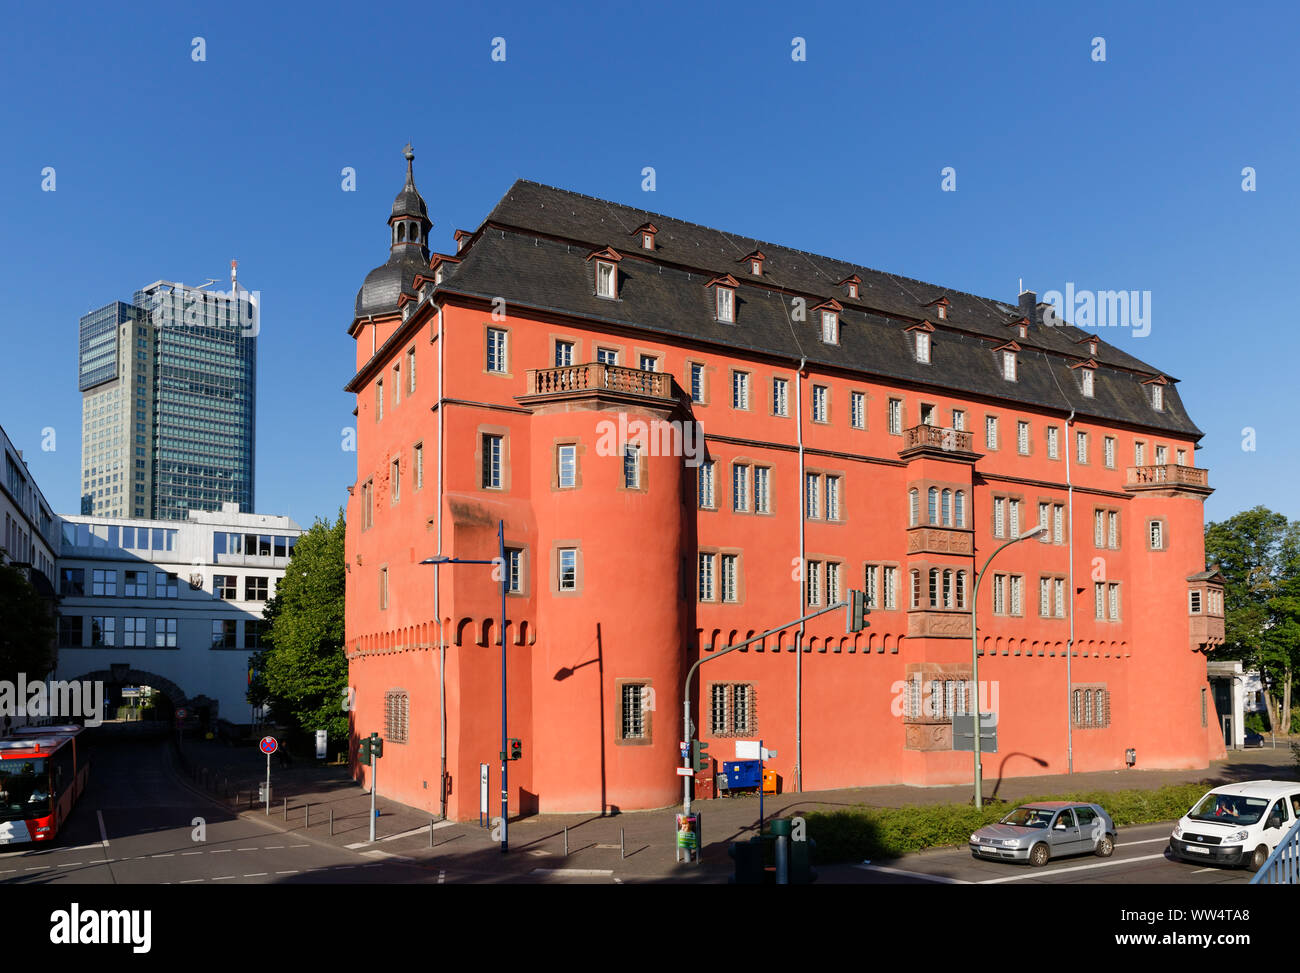 Isenburg castello e torre di città, Offenbach al principale, Hesse, Germania Foto Stock